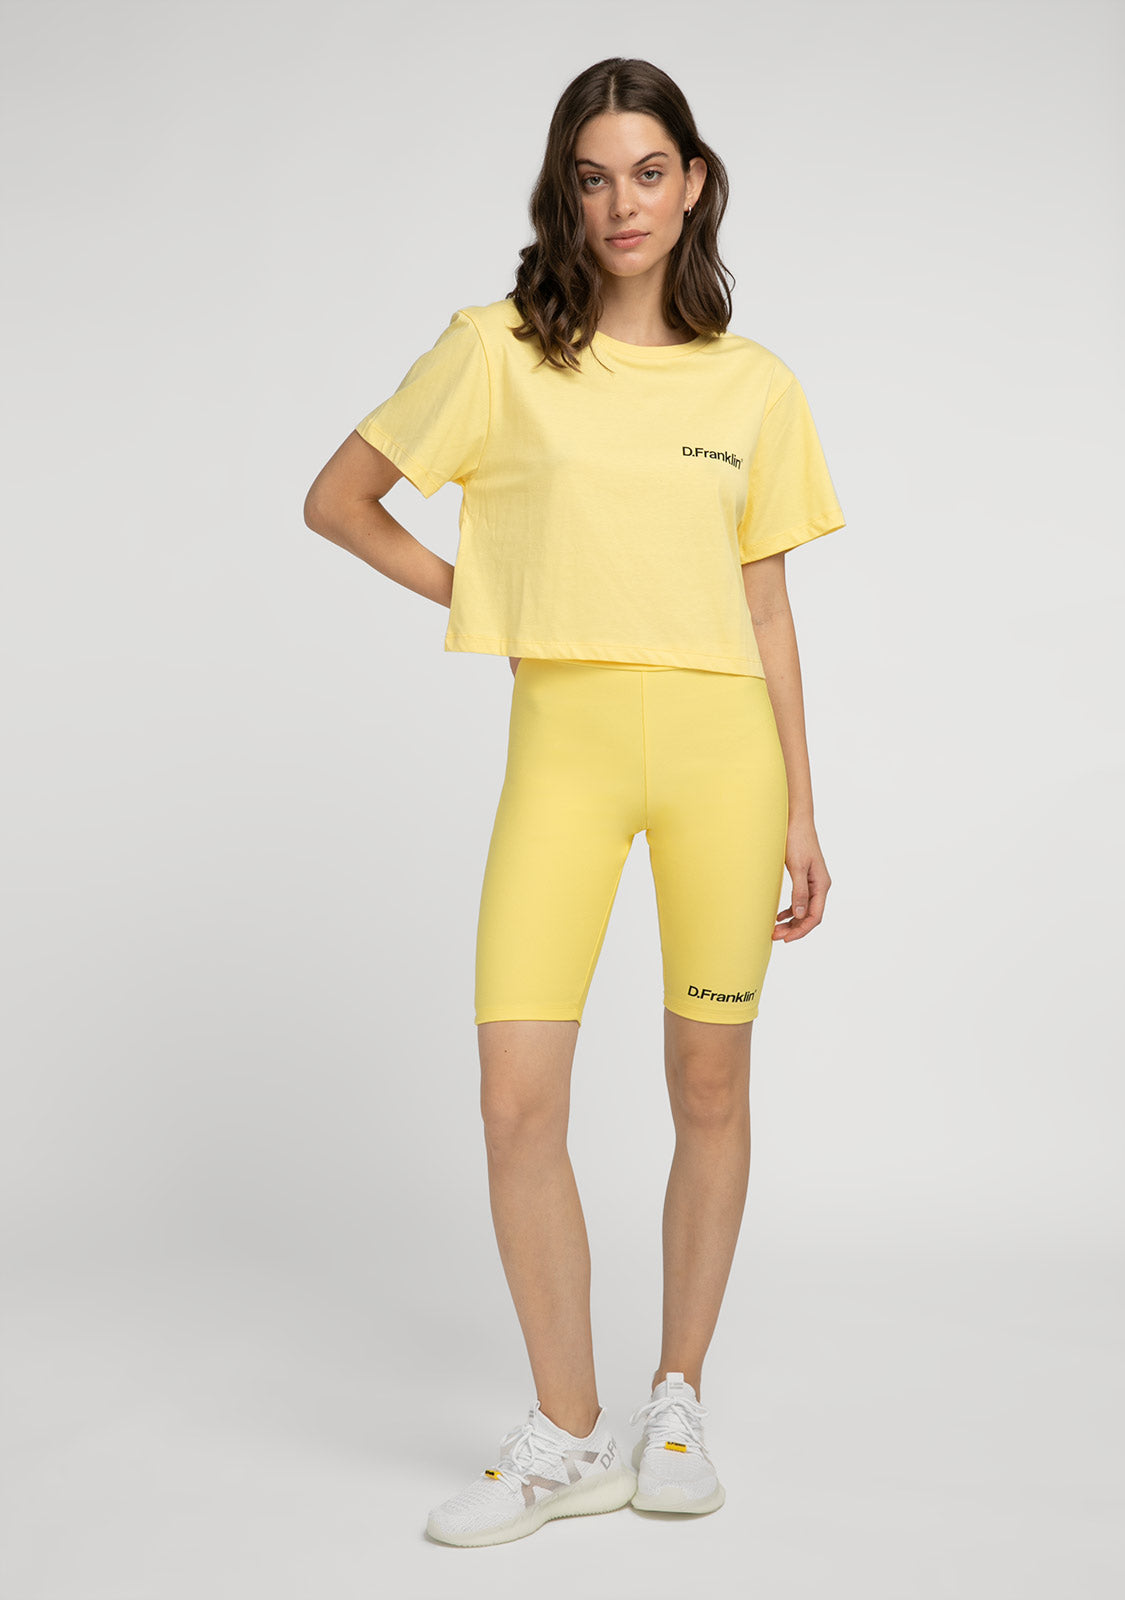 Basic Biker Short Yellow